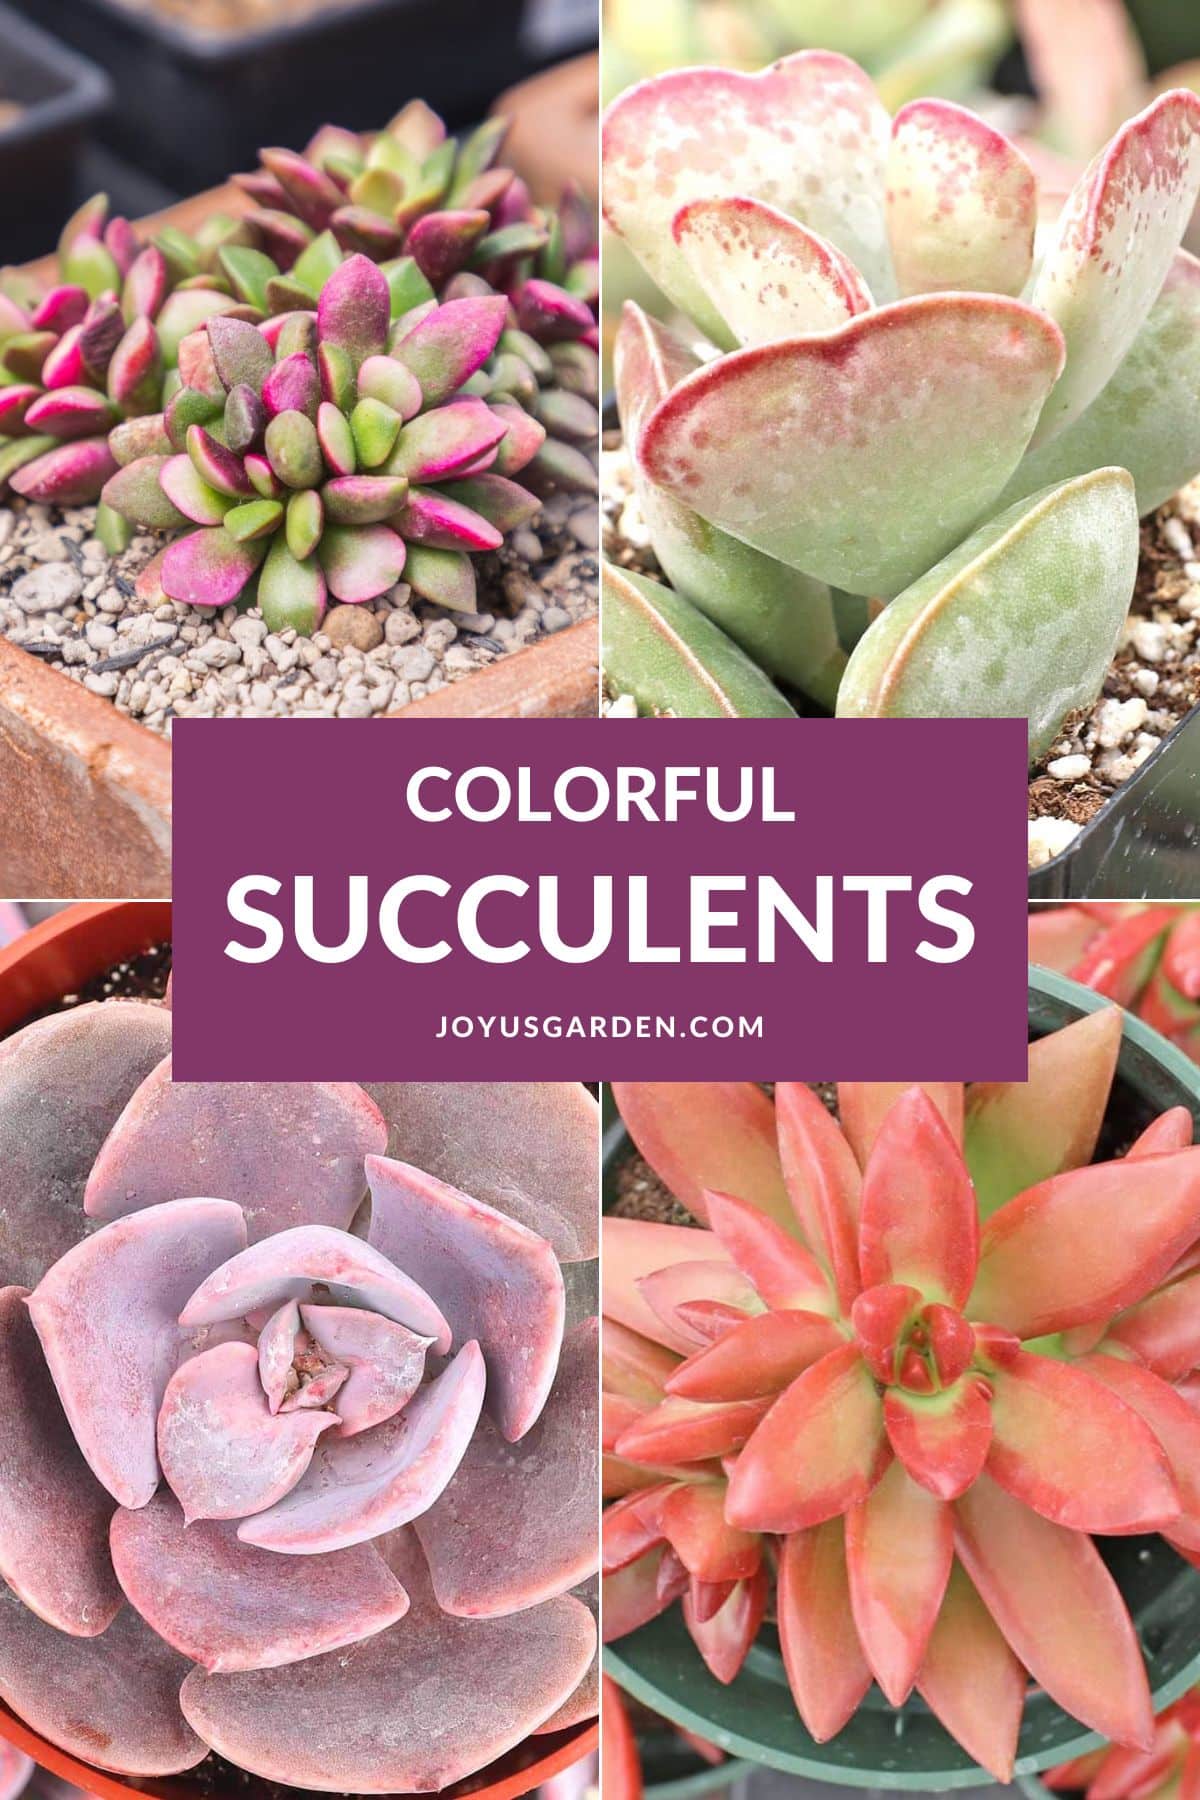  30 Succulentên rengîn ên ku hûn ê jê hez bikin